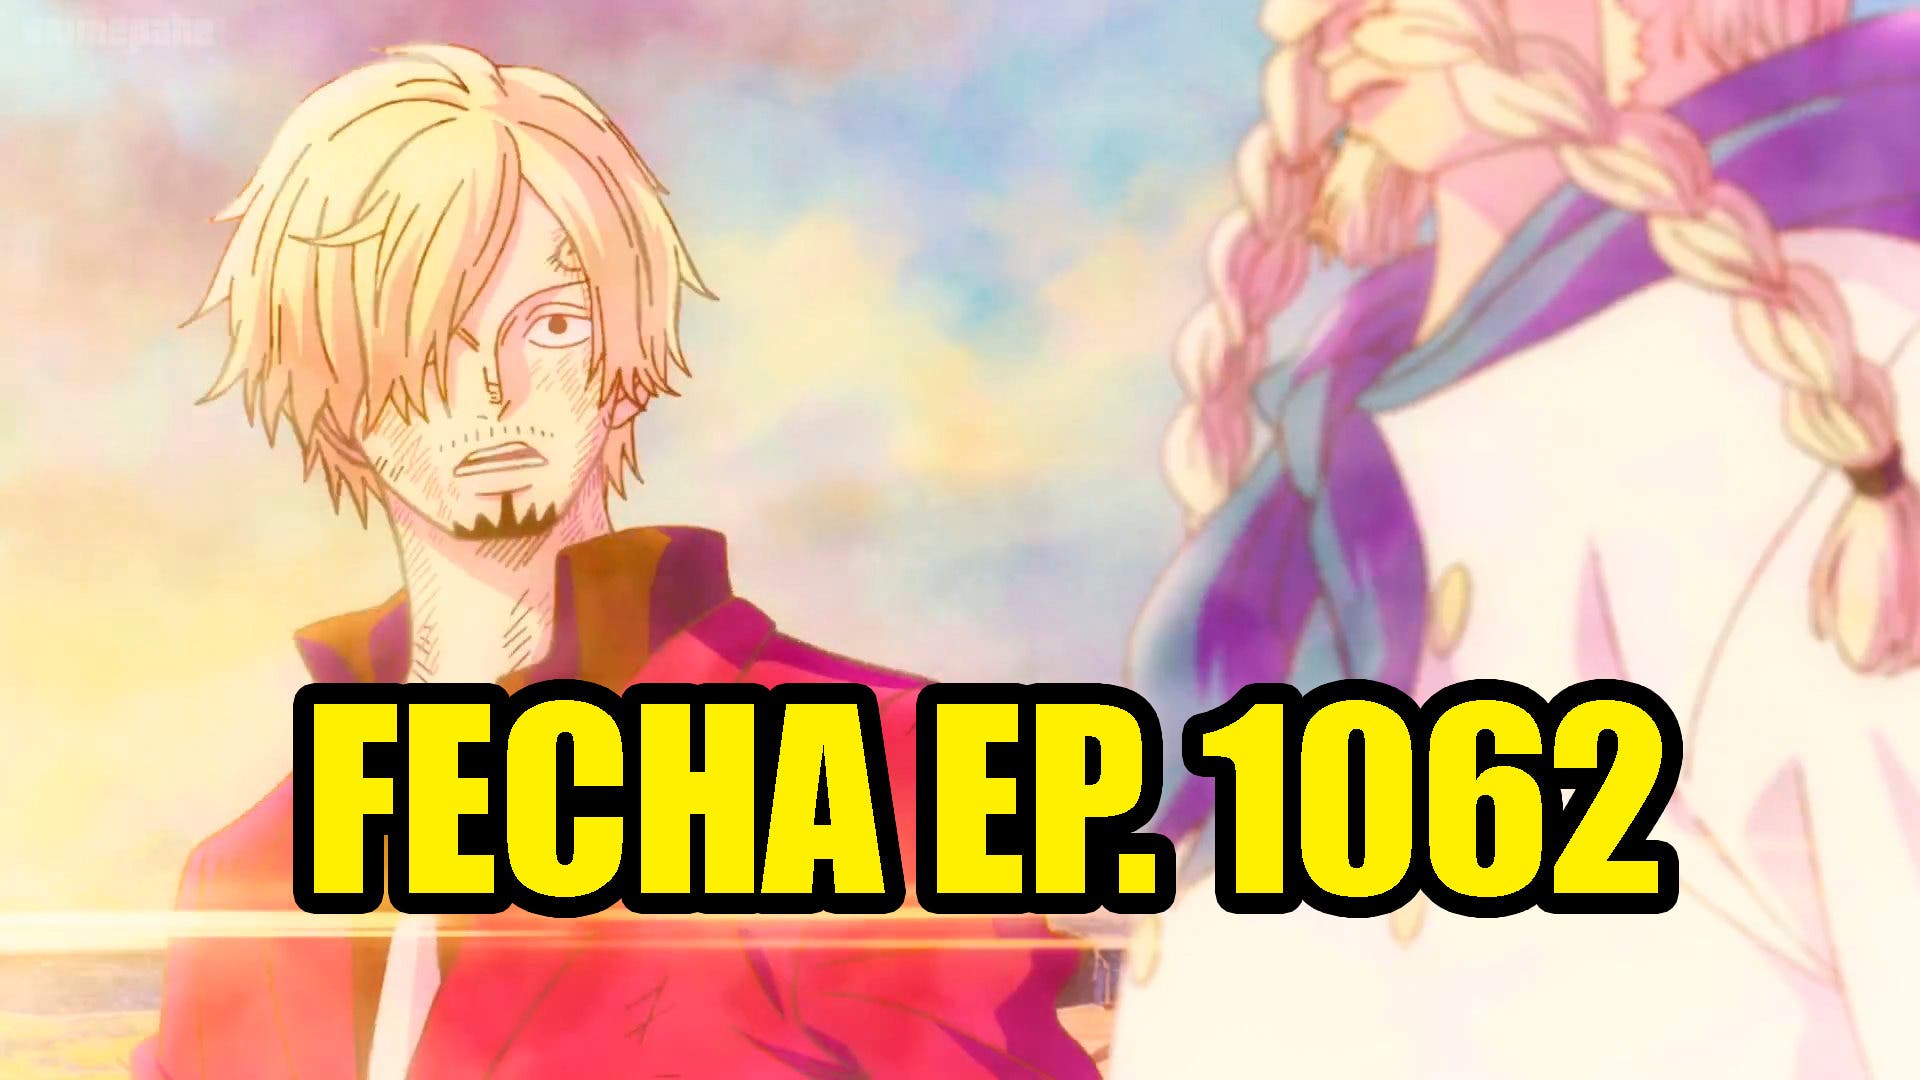 One Piece: horario y dónde ver el episodio 1020 del anime